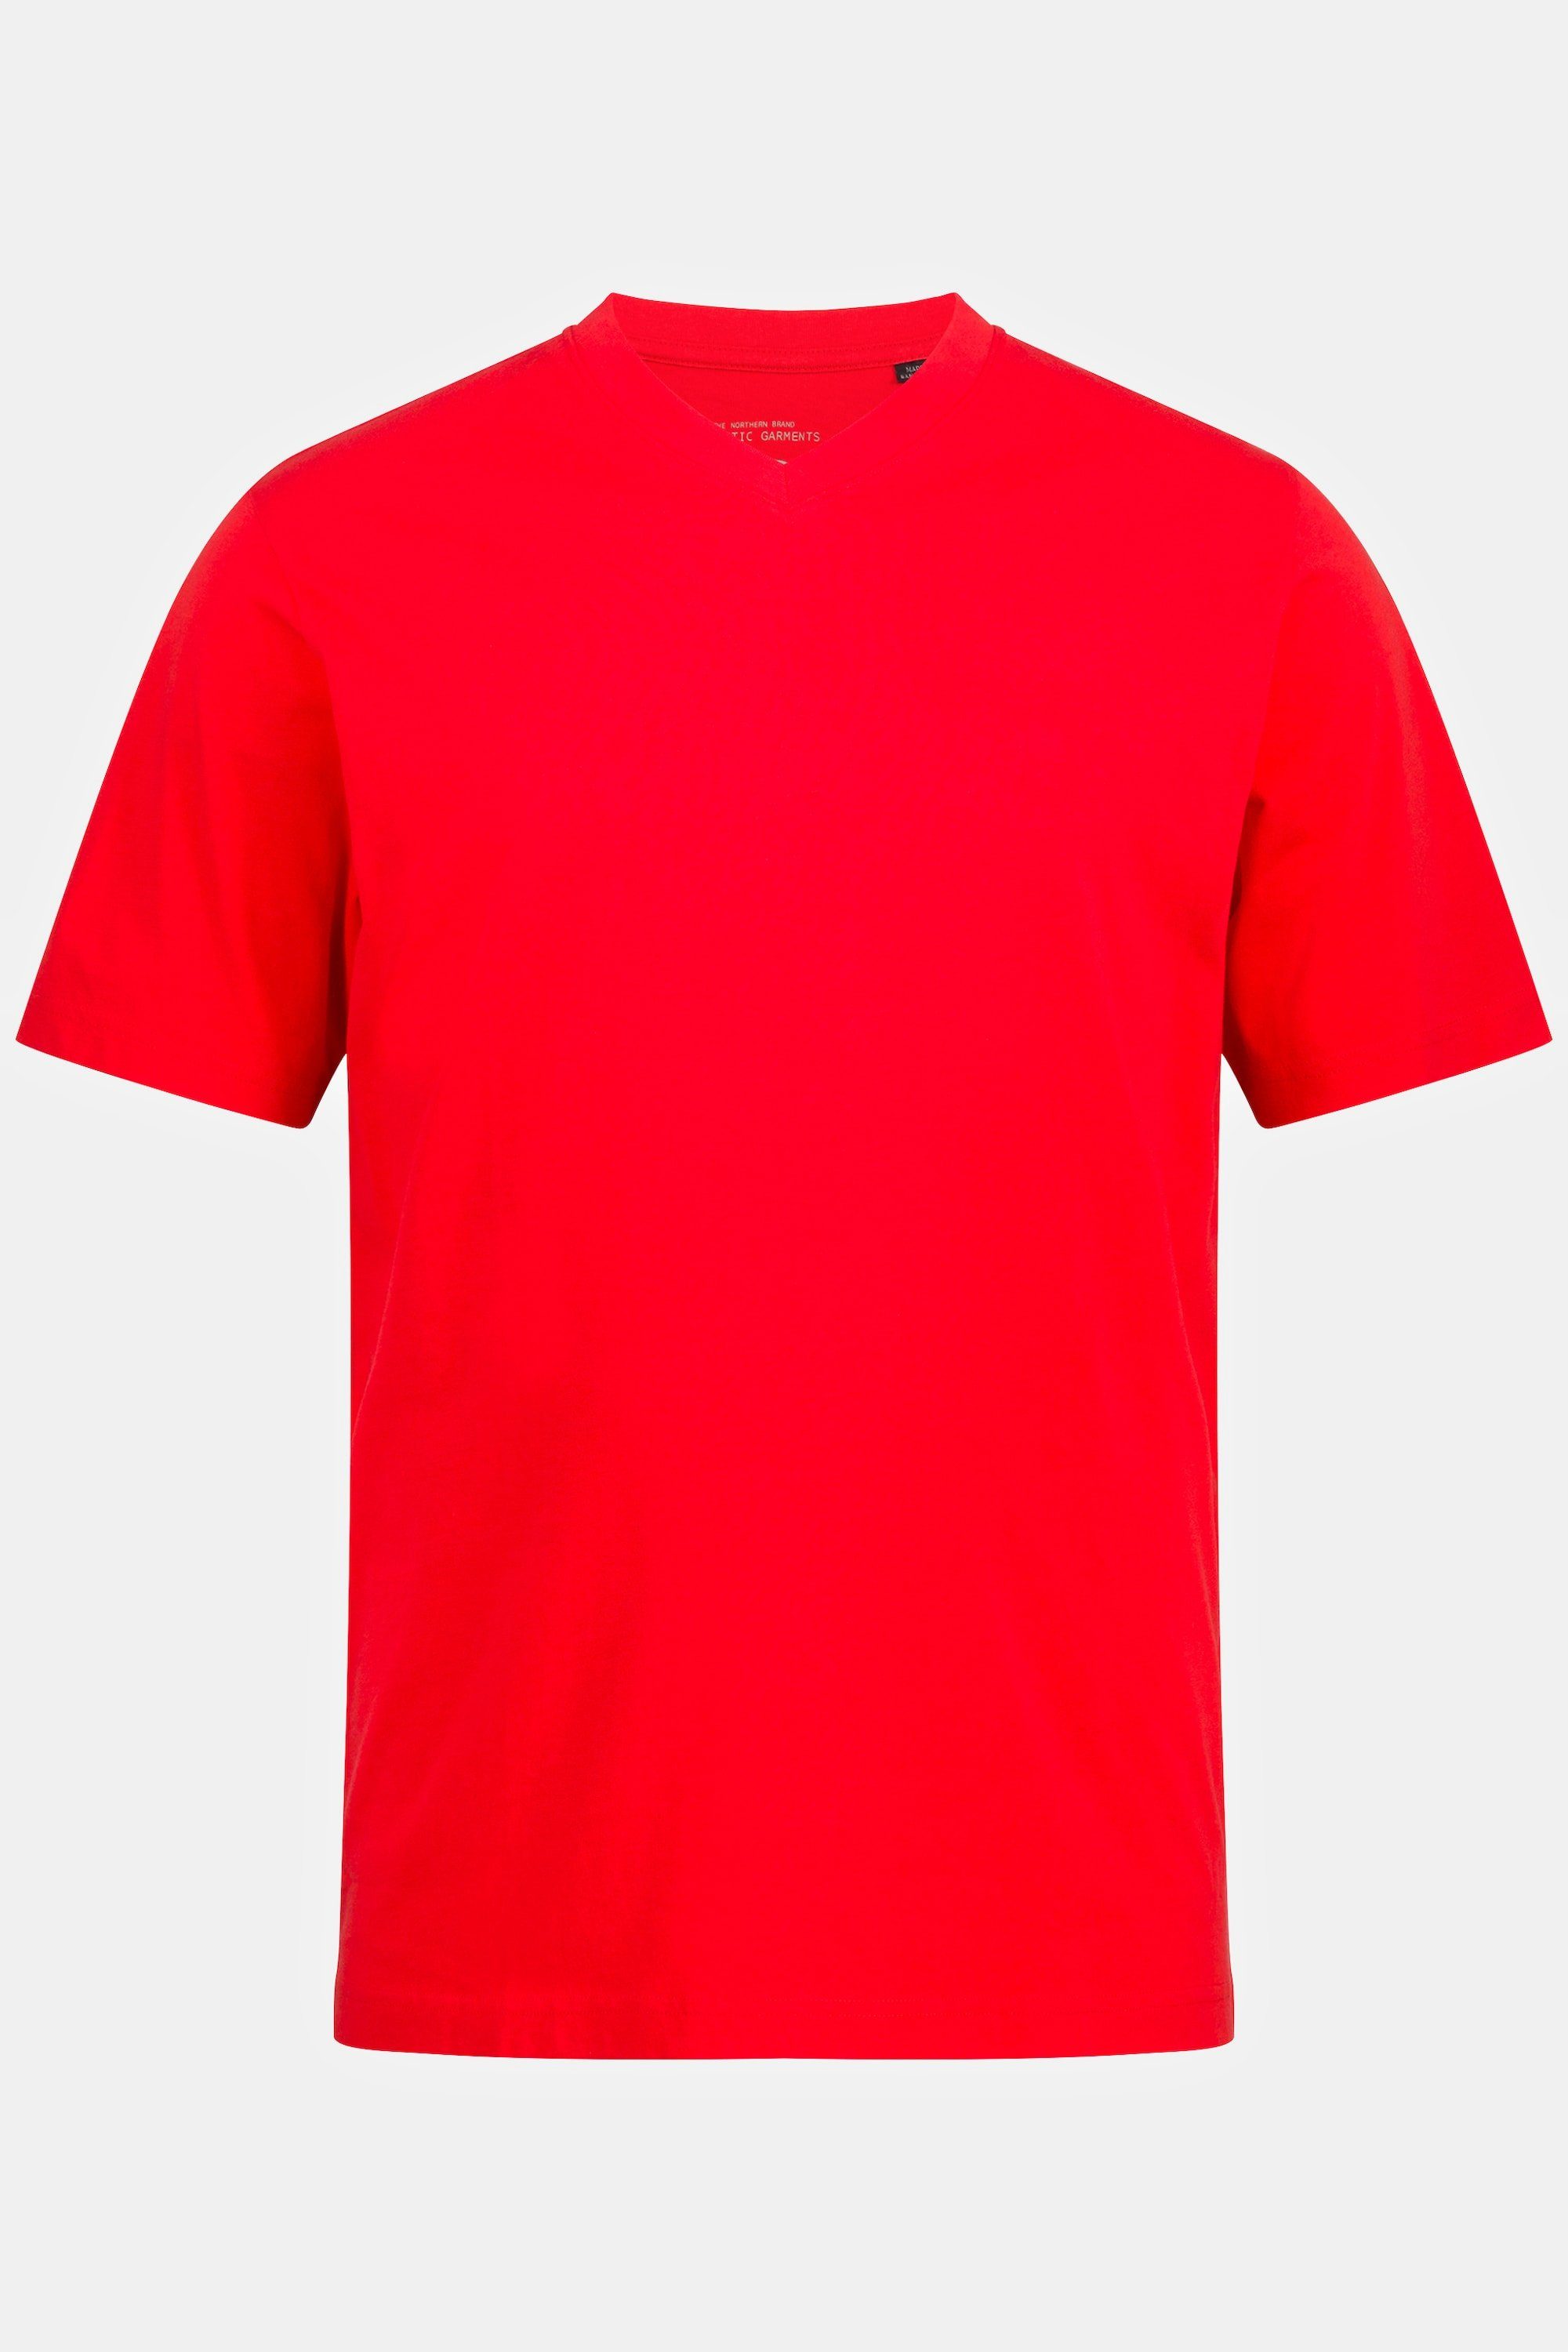 Basic JP1880 T-Shirt paprikarot V-Ausschnitt T-Shirt 8XL bis